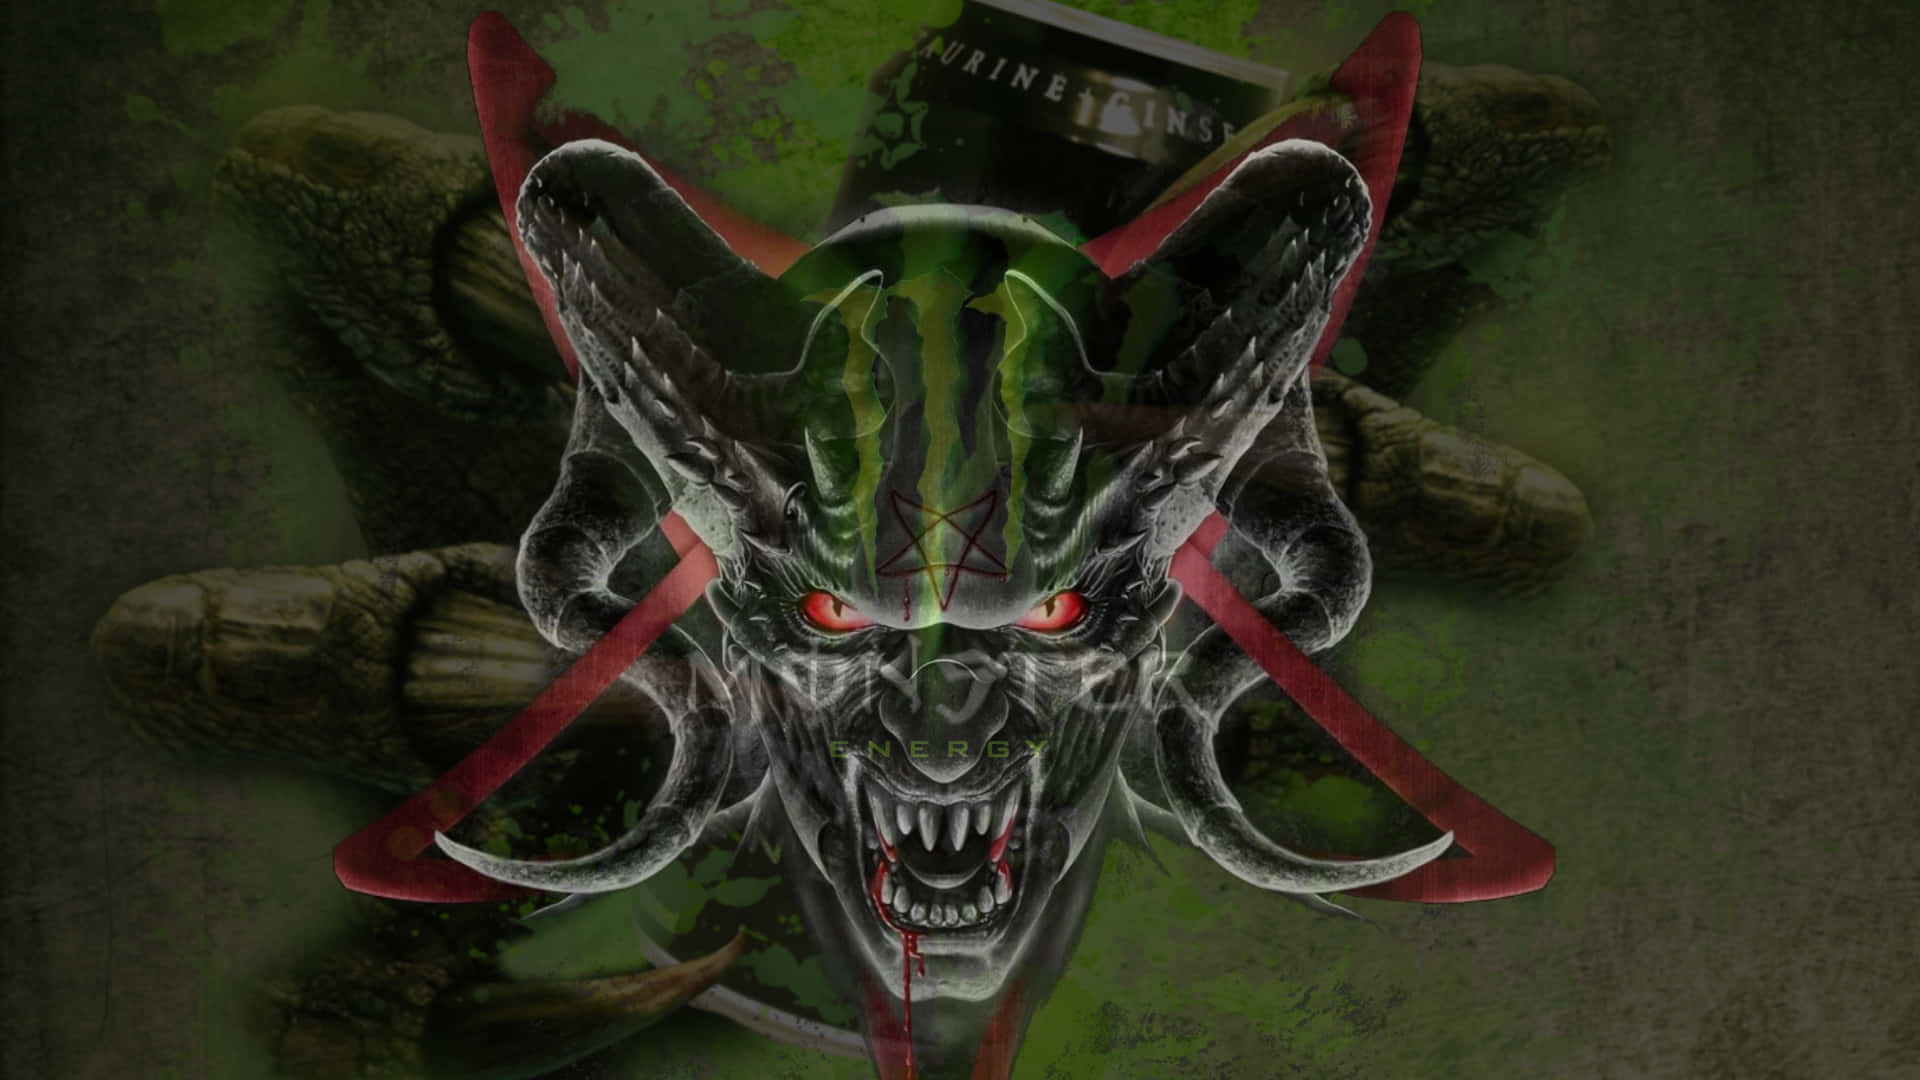 Monster Energy Logo in Vibrant Green